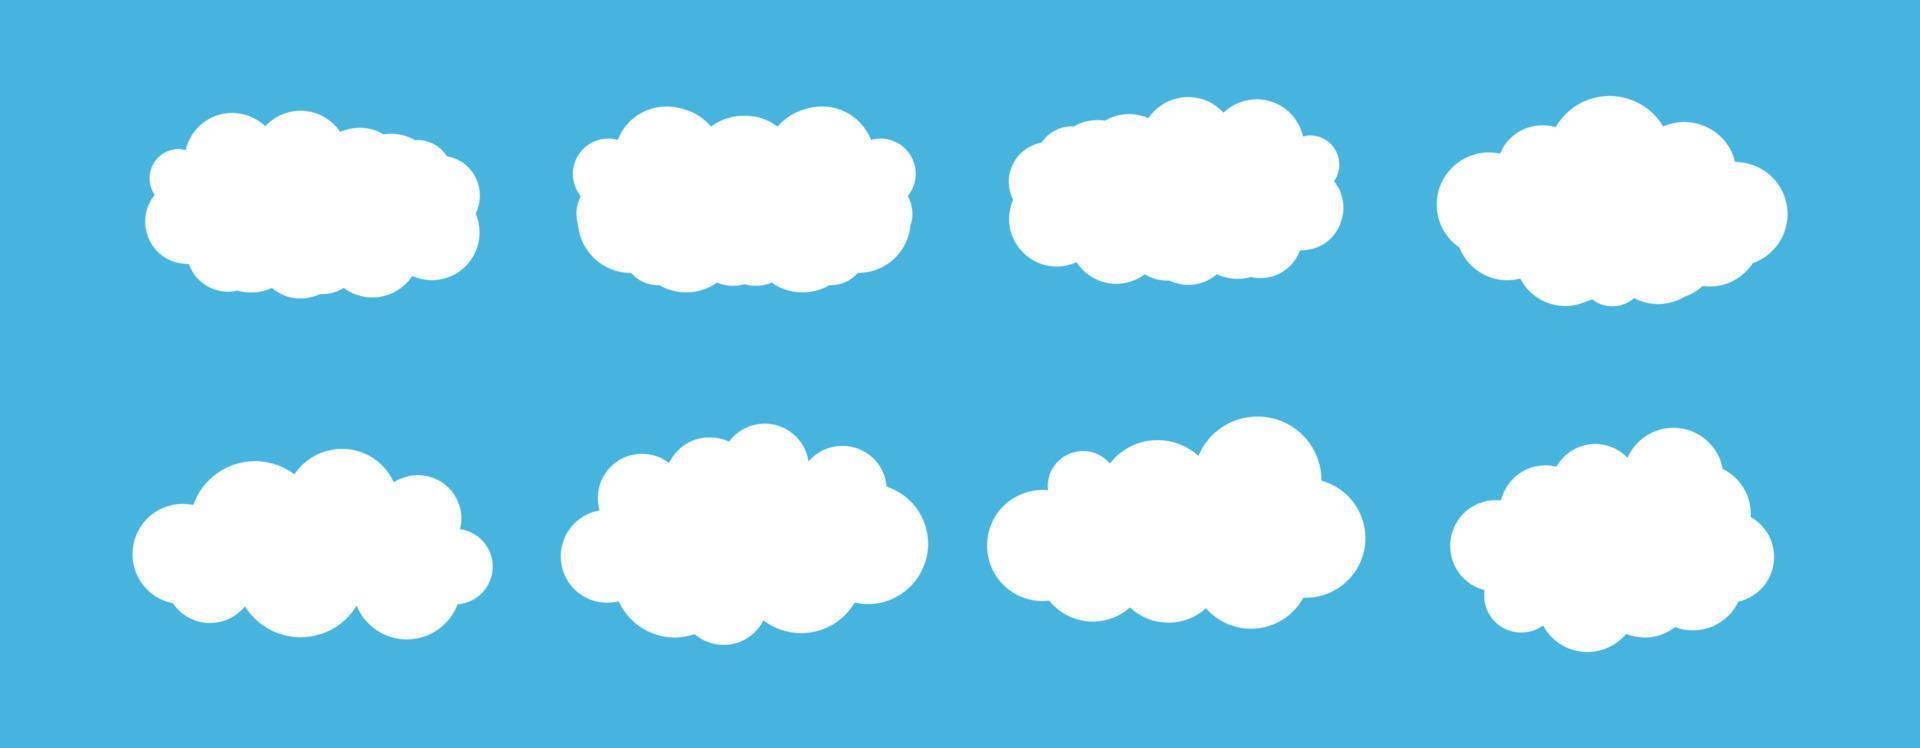 cloud icon set, cloud vector set, cloud clipart set black icon set